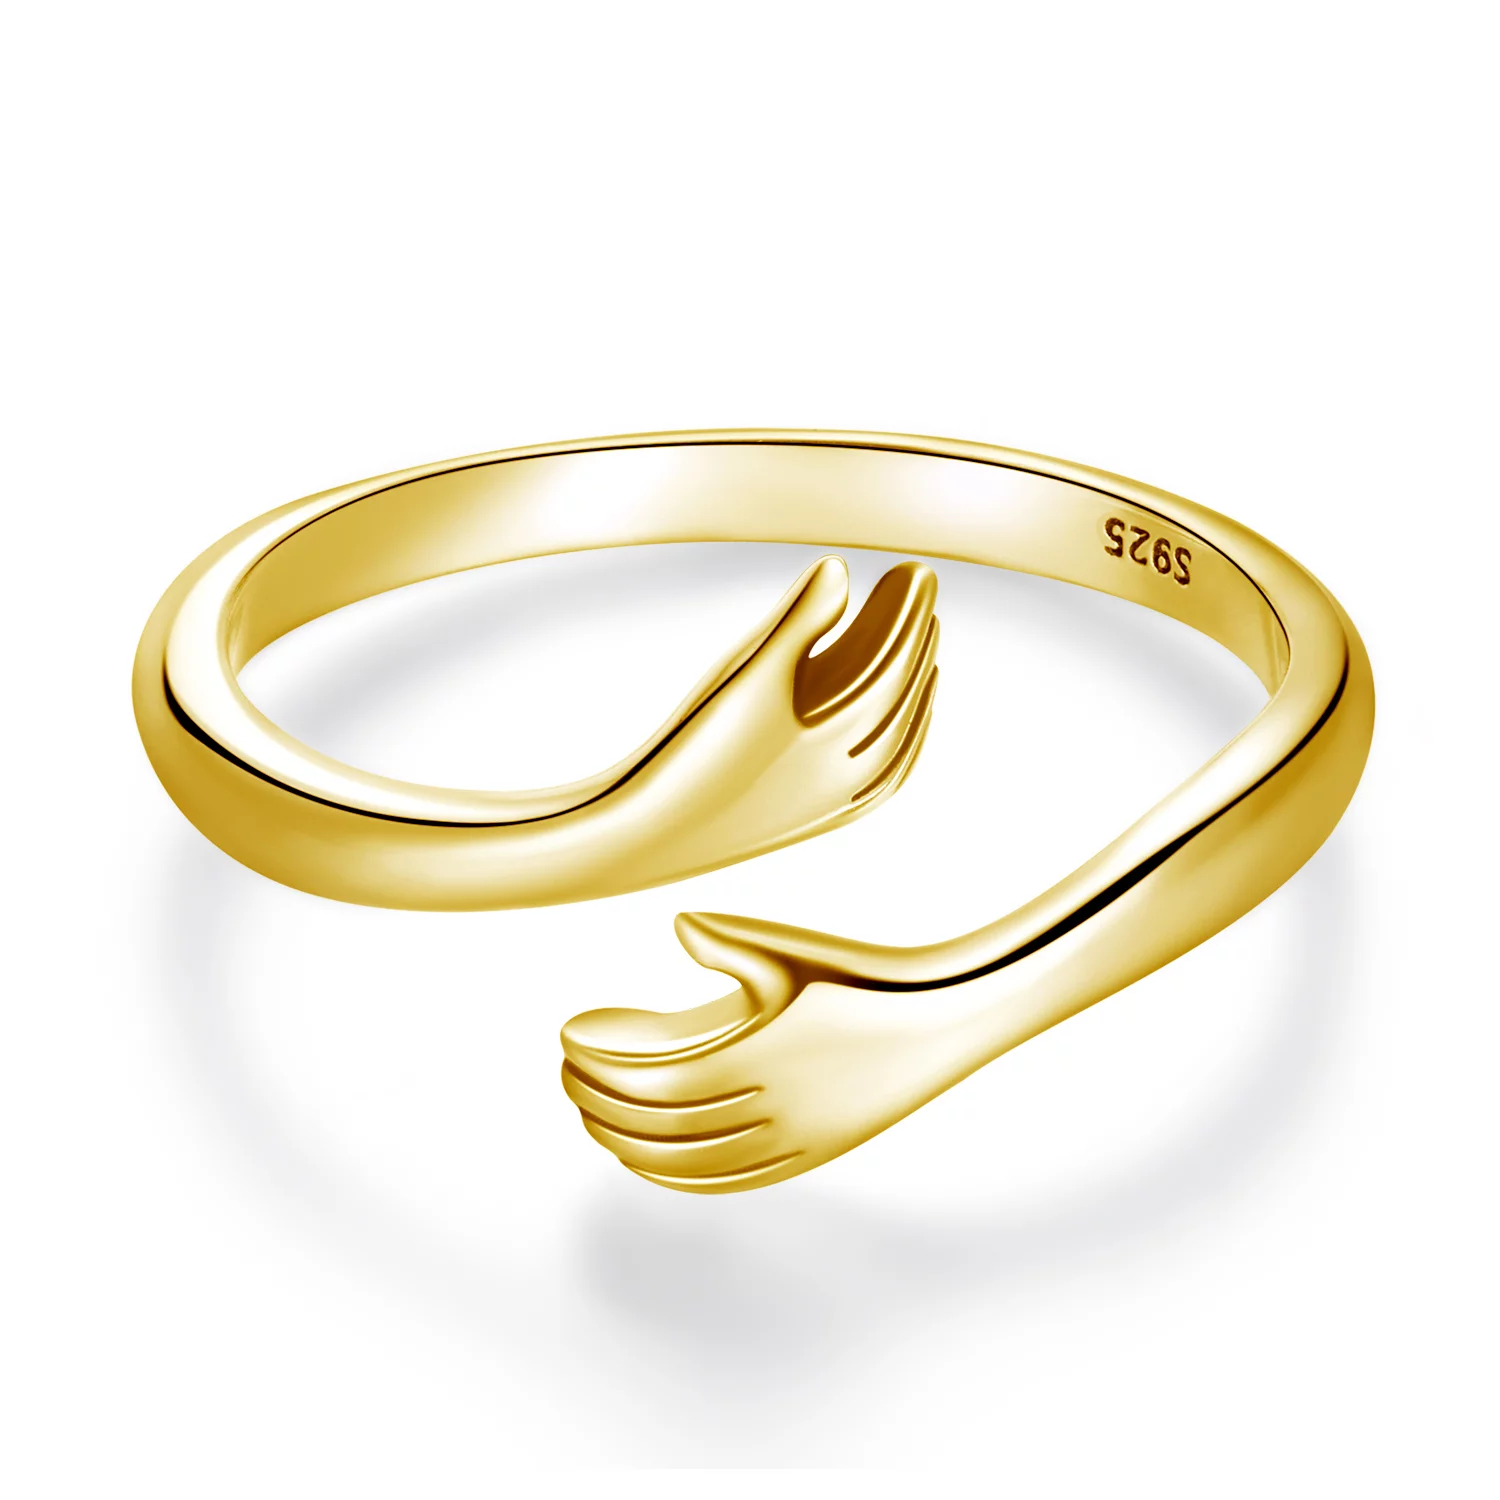 Регулируем сребърен пръстен, който ви прегръща златен пръстен